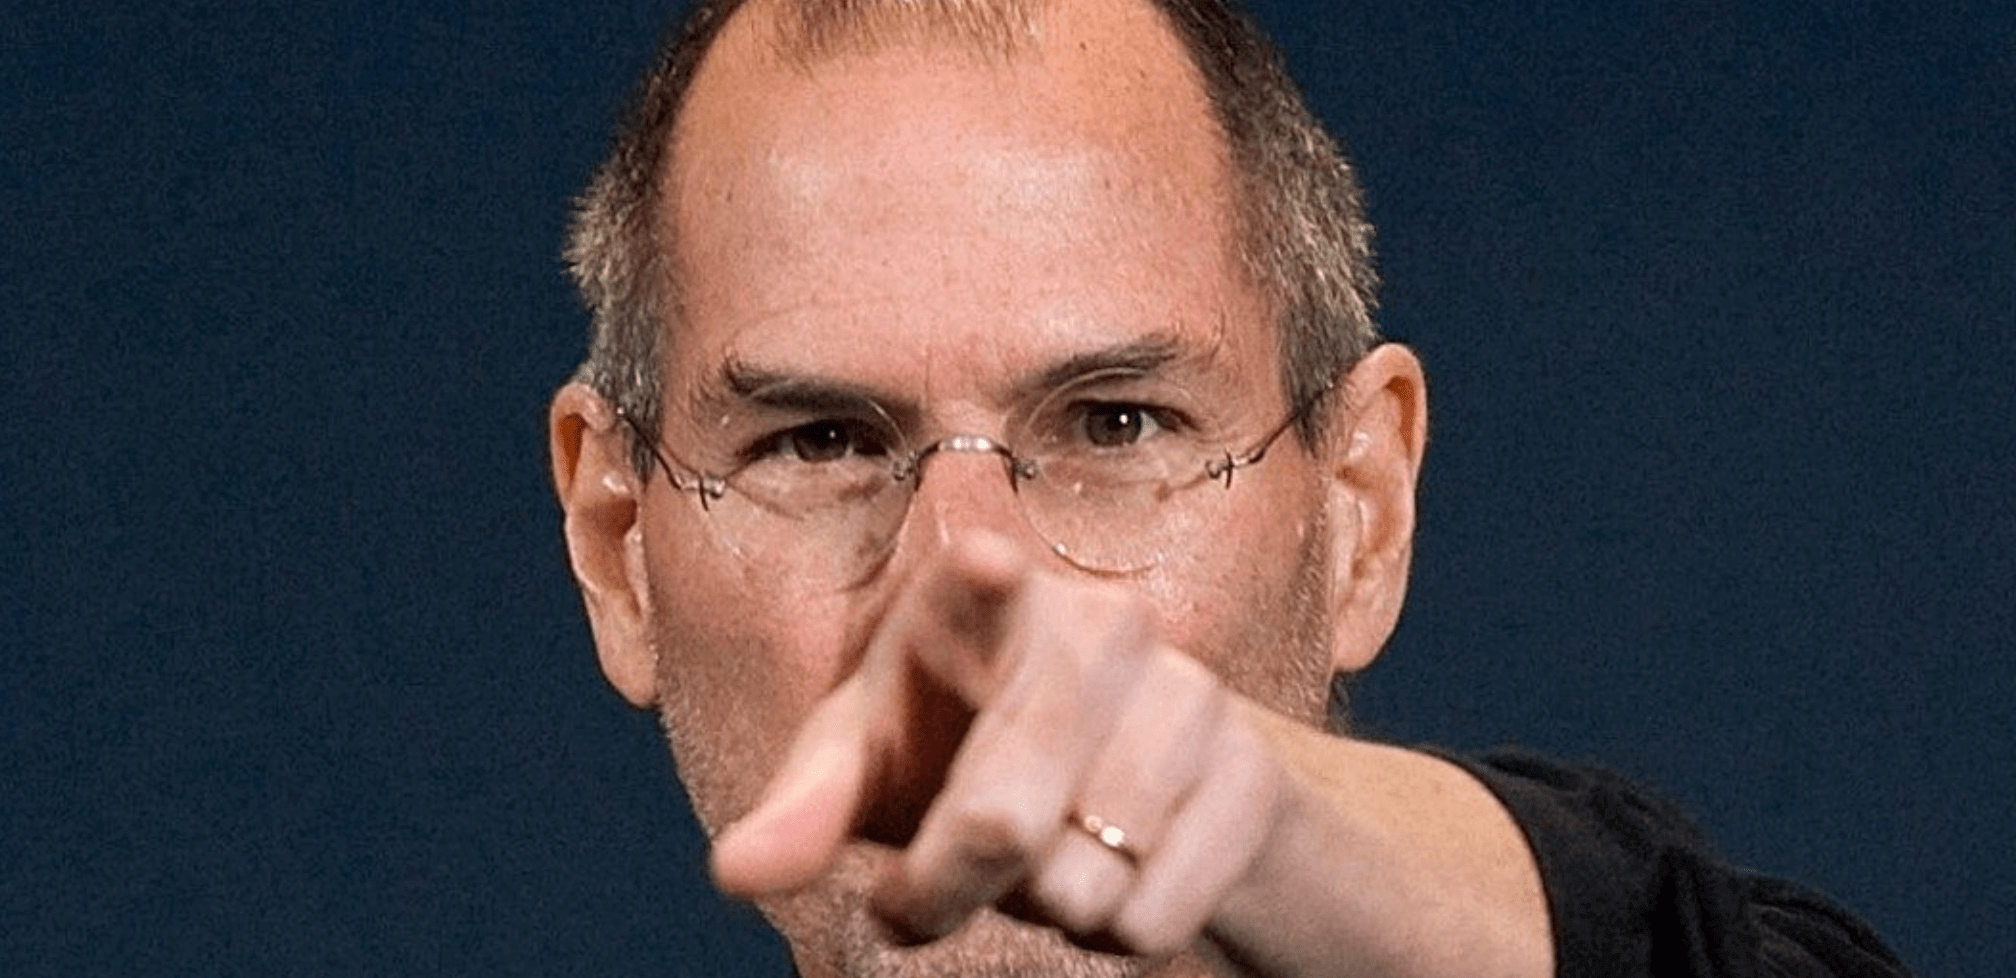 Tanulj meg lereagálni egy sértést Steve Jobstól